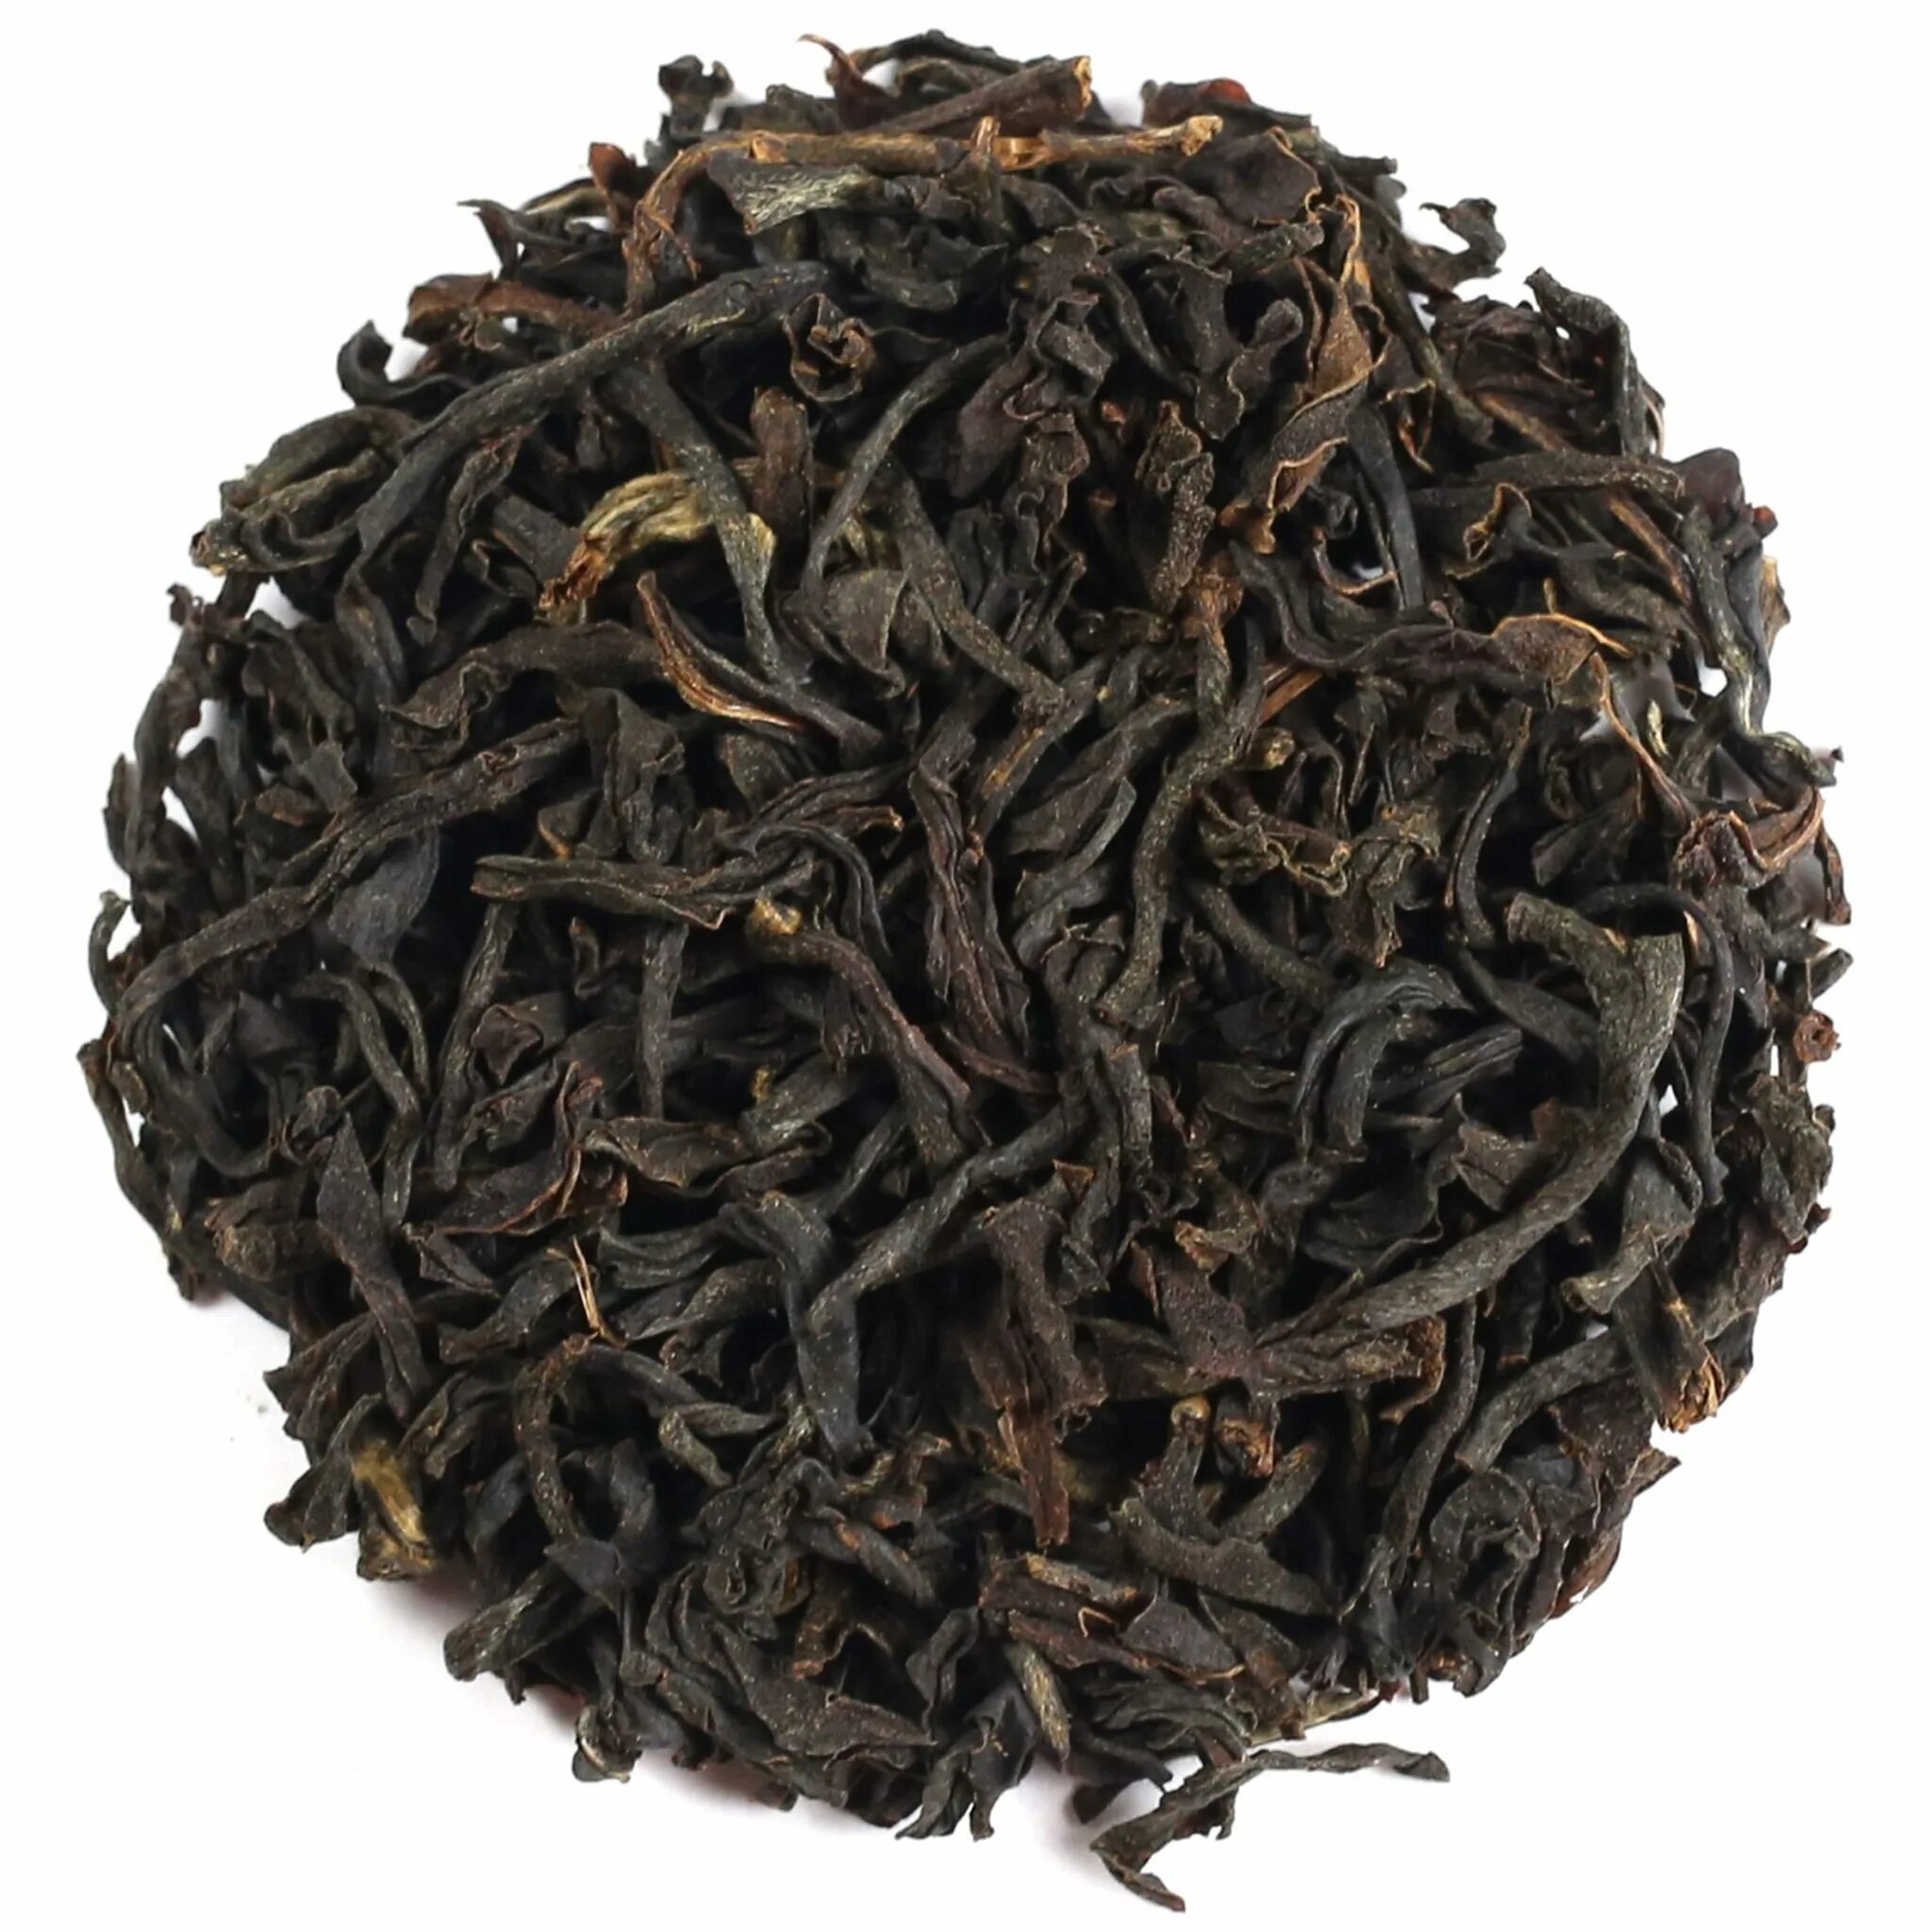 Купить новый чай. Чай черный Ассам. Индийский чай Ассам. Чай черный Assam. Ассам TGFOP.